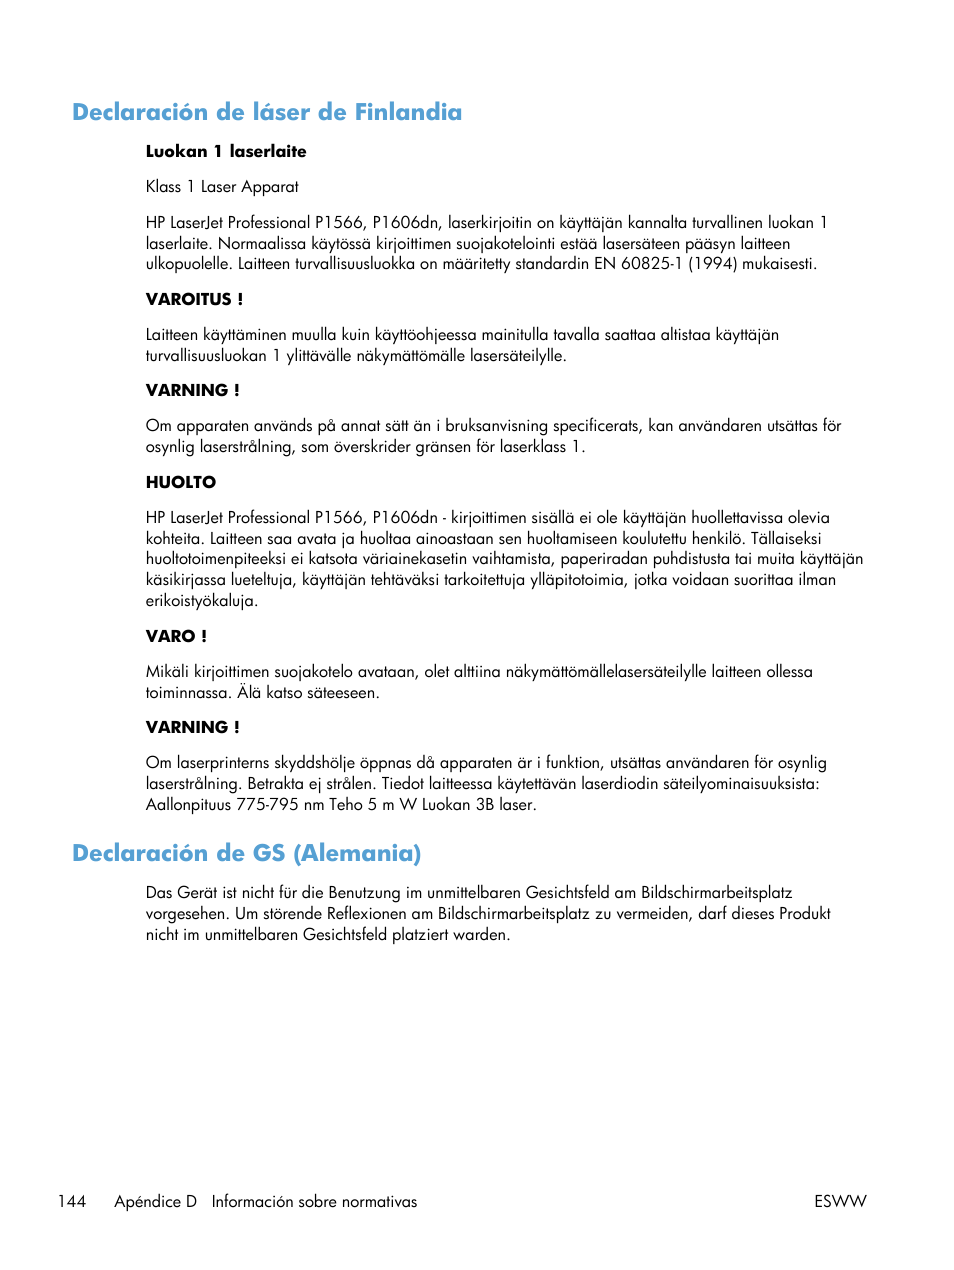 Declaración de láser de finlandia, Declaración de gs (alemania) | HP Laserjet p1606dn Manual del usuario | Página 158 / 168